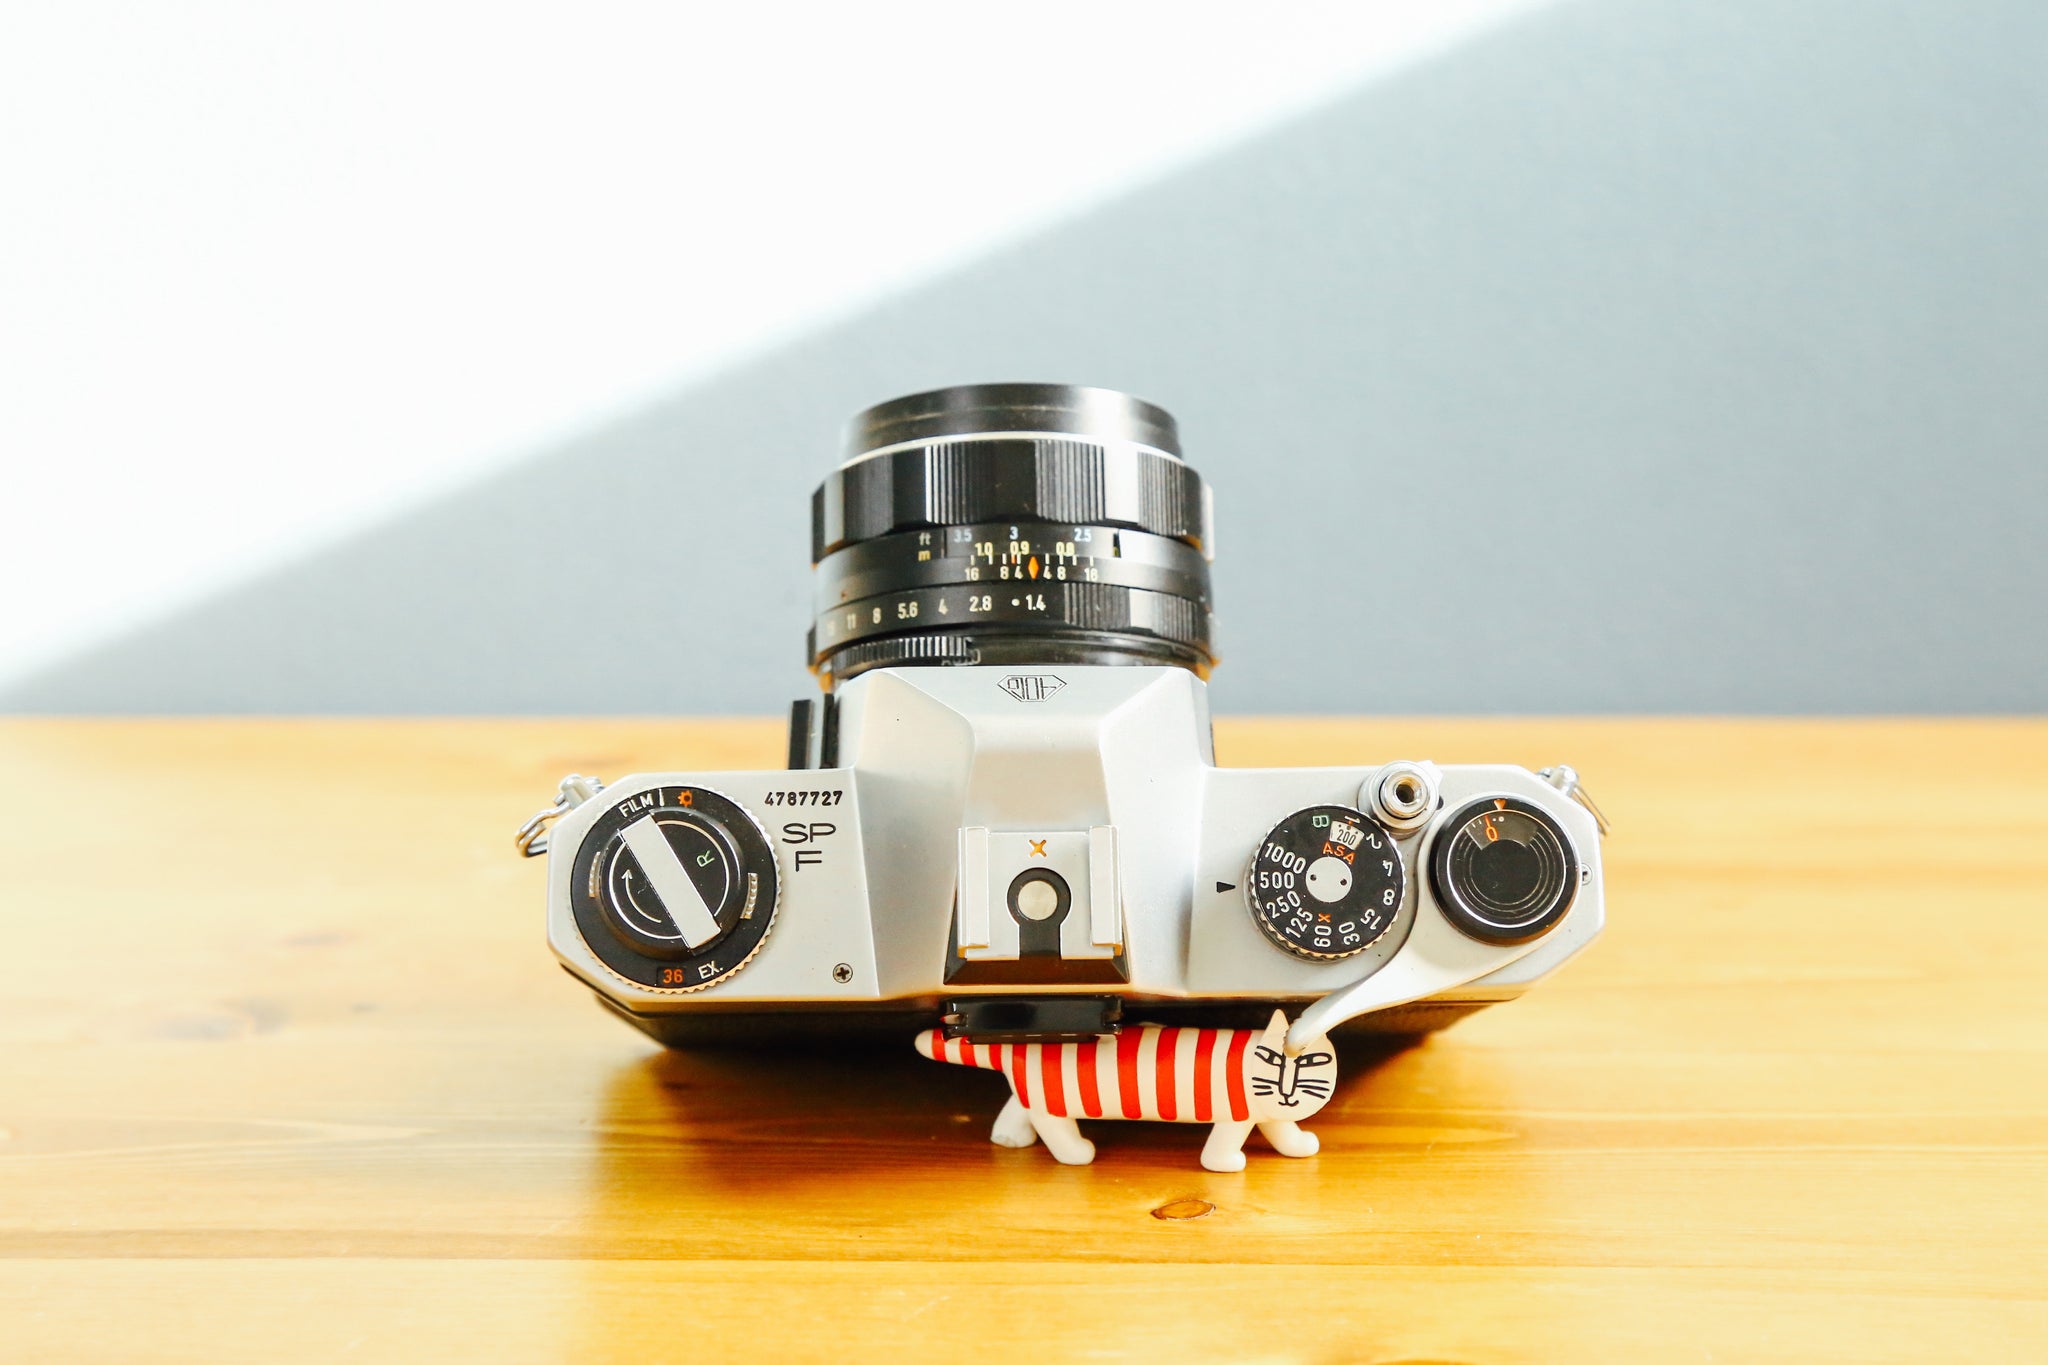 PENTAX SP レンズ付き 完動品 各種付属品付き - フィルムカメラ